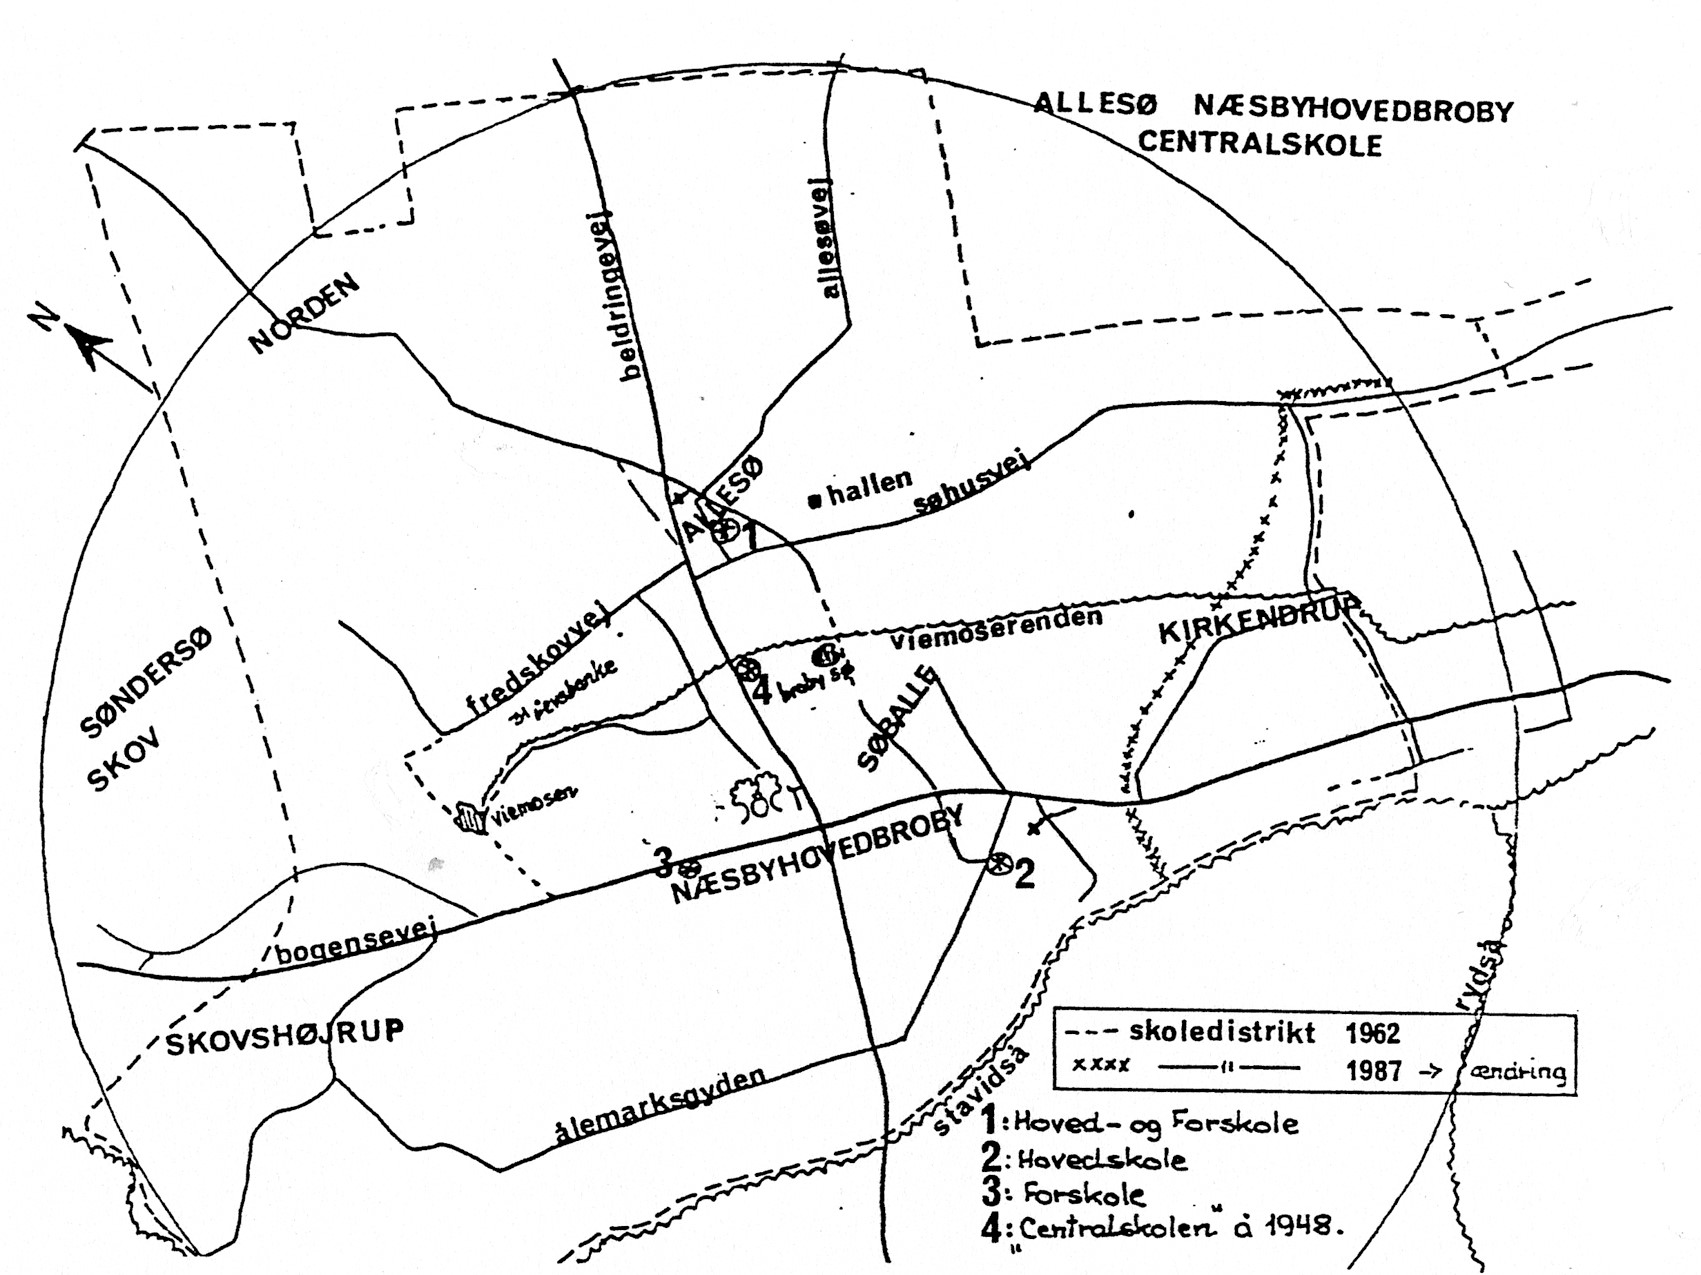 Kort over Allesø-Næsbyhovedbroby-Centralskole